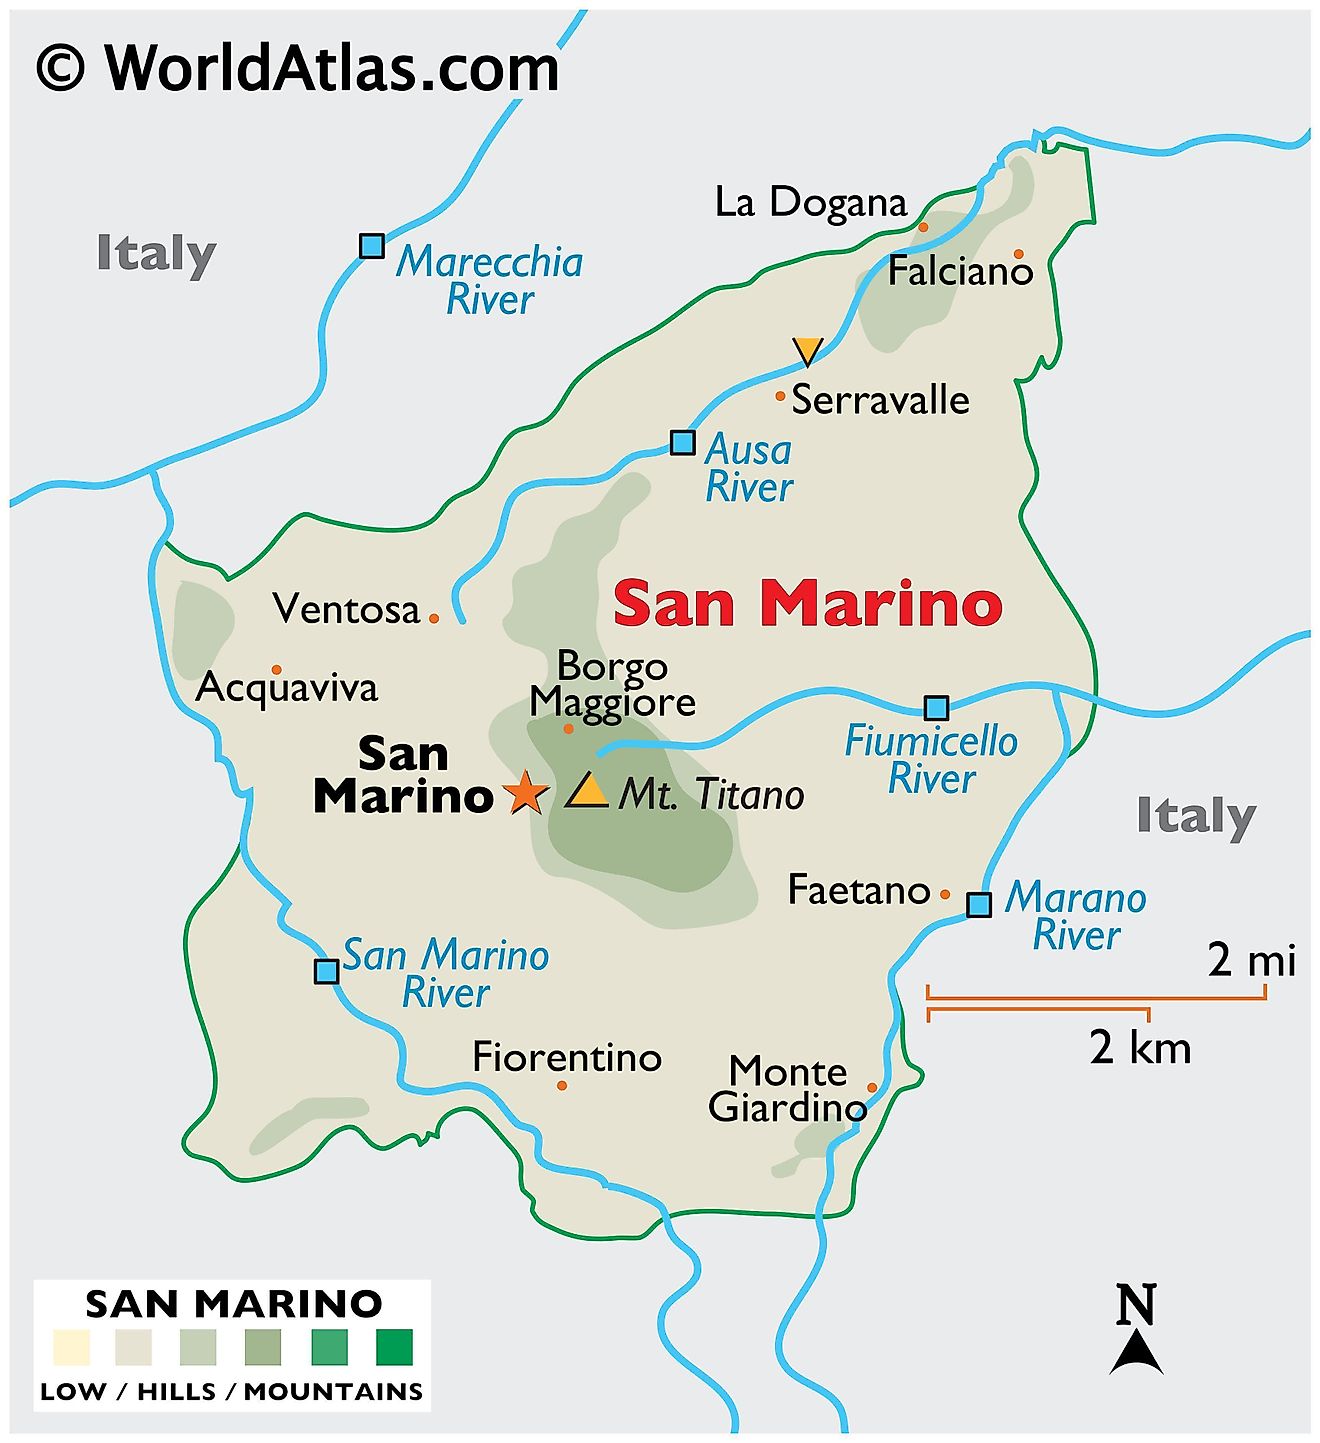 Mapa Físico de San Marino mostrando su relieve, puntos extremos, ríos, etc.